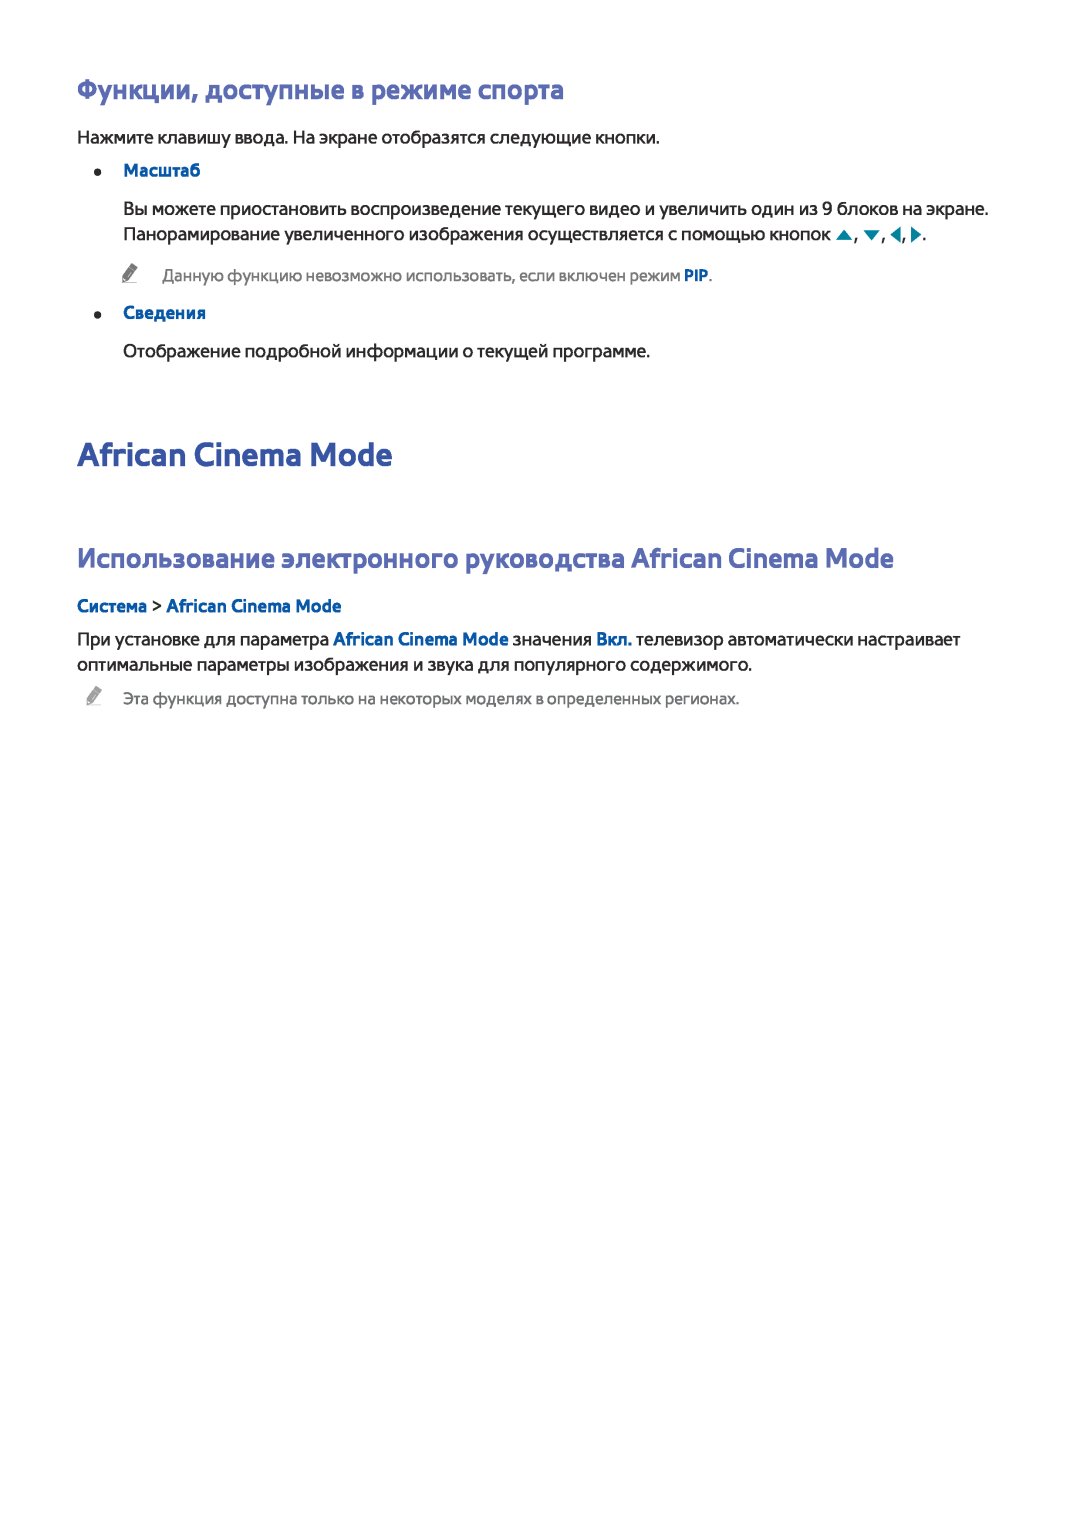 Samsung UE49J5300AUXRU manual Функции, доступные в режиме спорта, Система African Cinema Mode, Масштаб, Сведения 